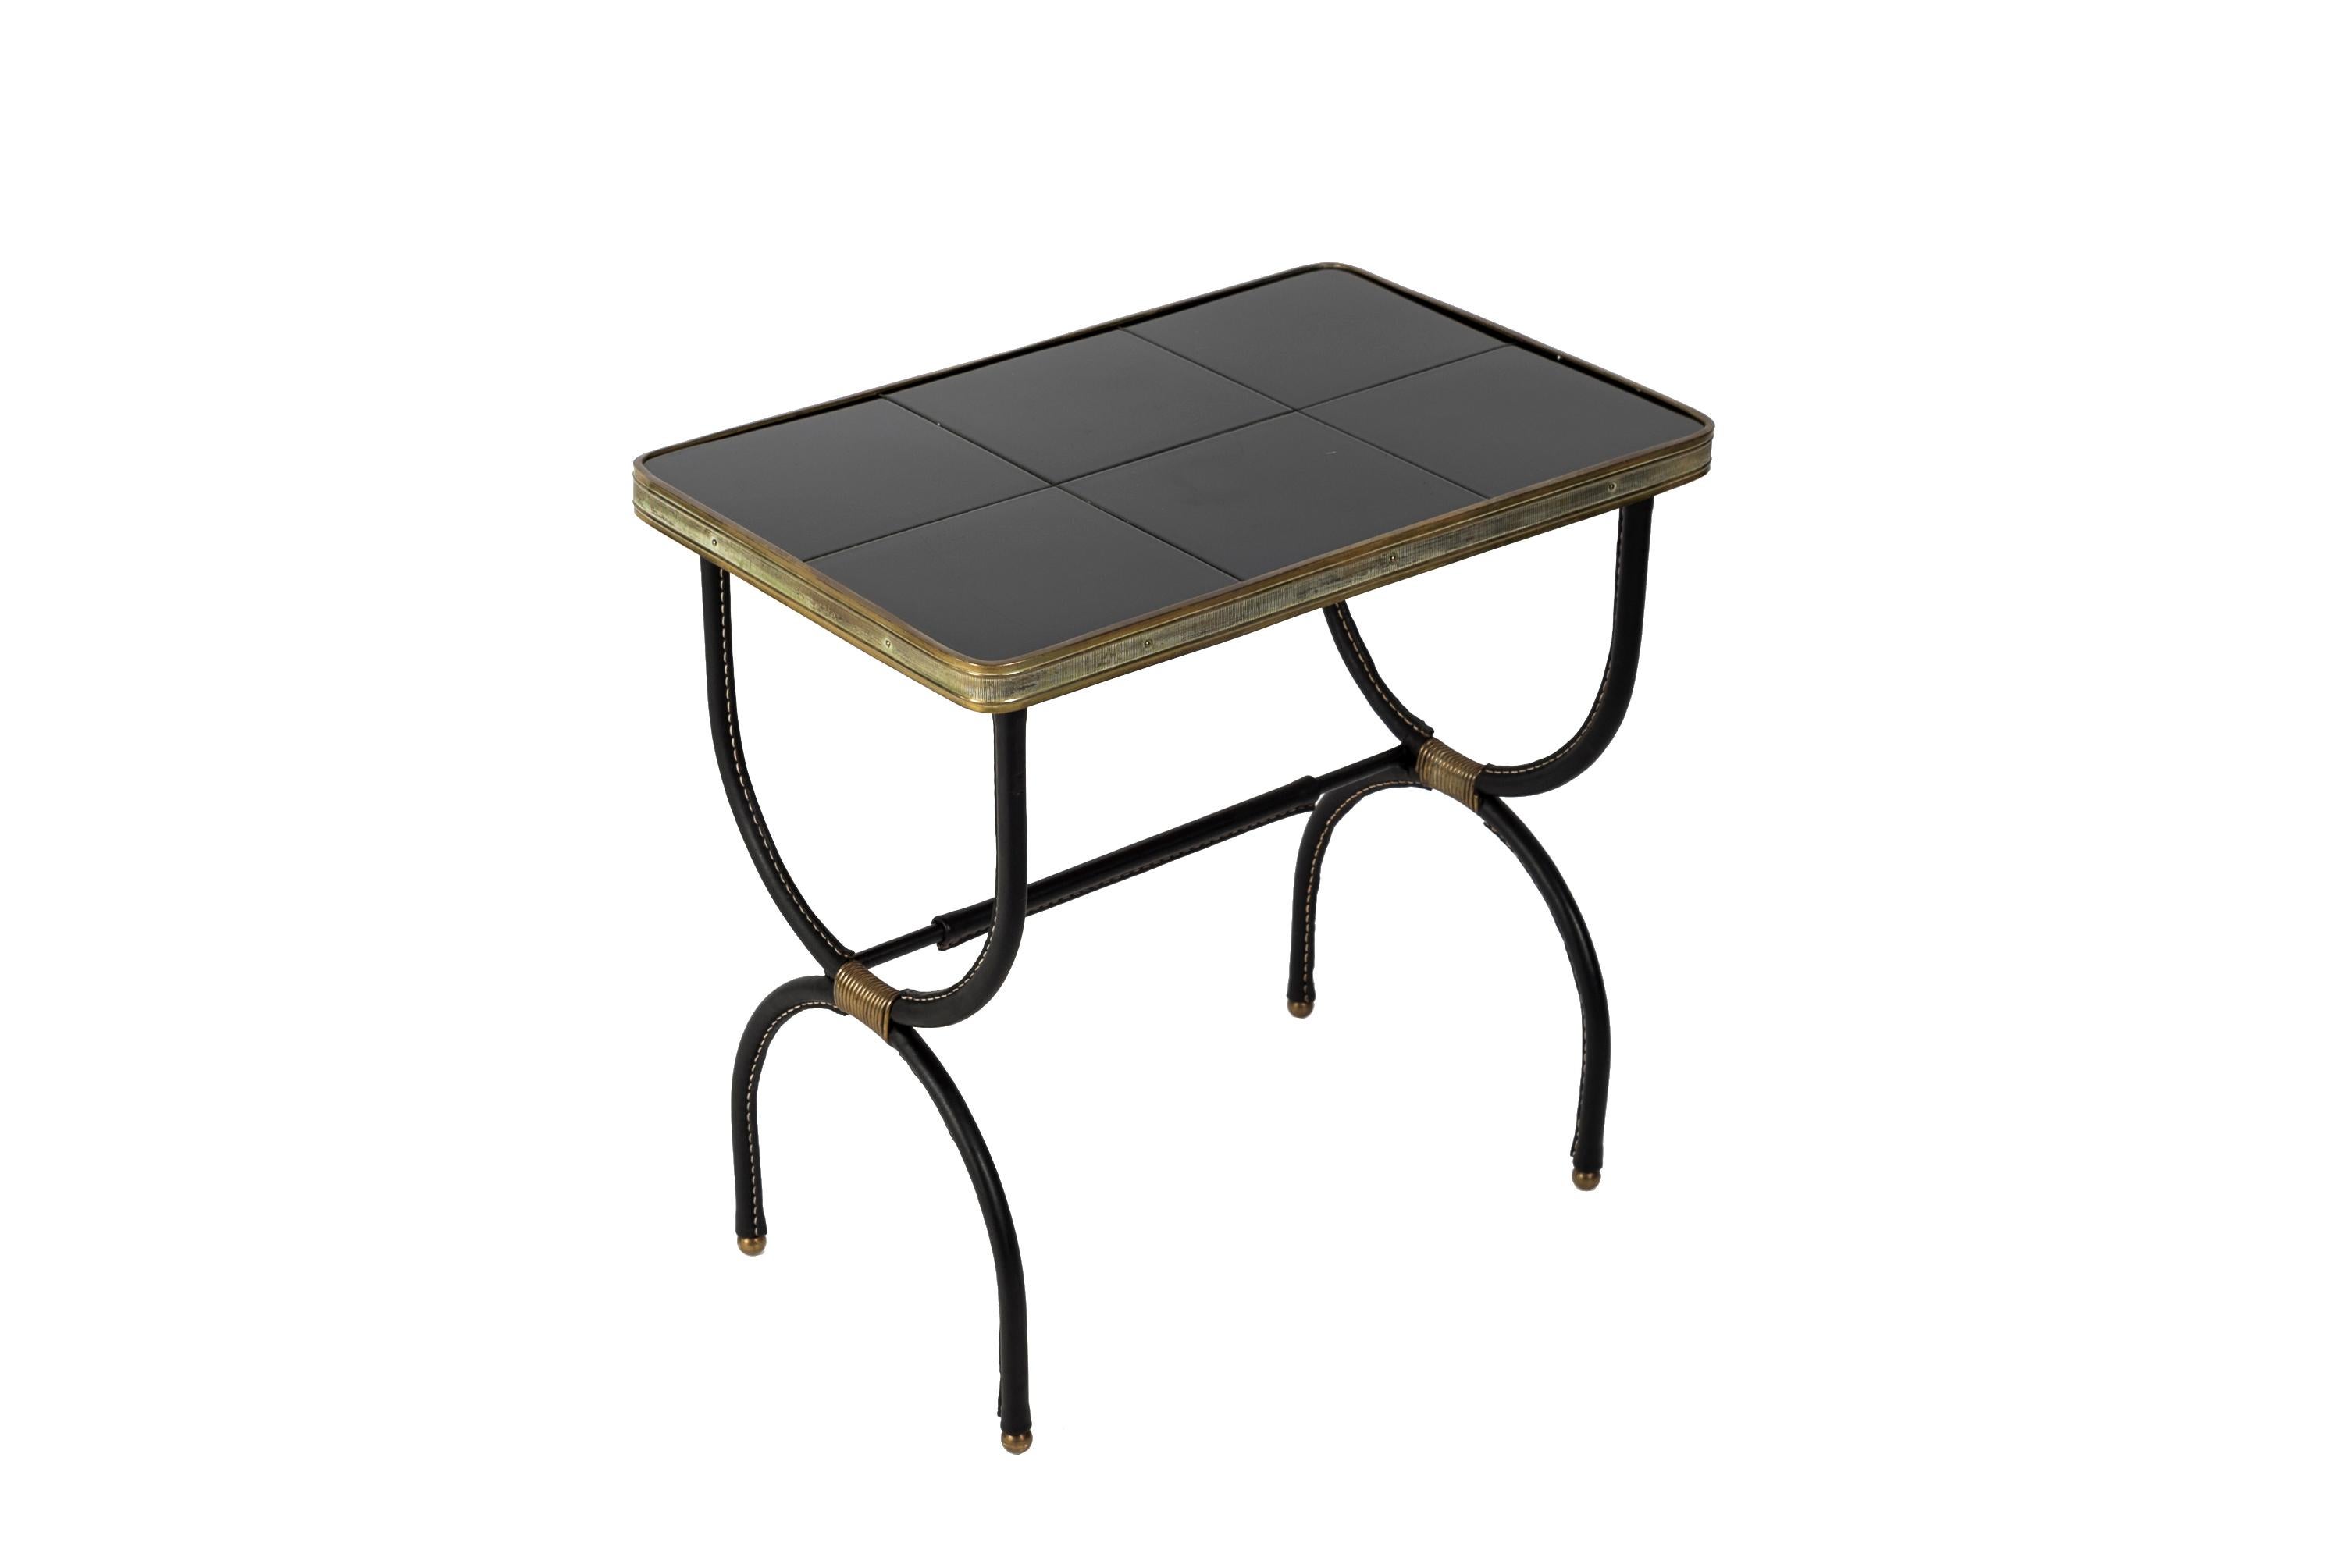 Tables d'appoint en cuir piqué des années 1950 avec plateau en céramique noire.
  